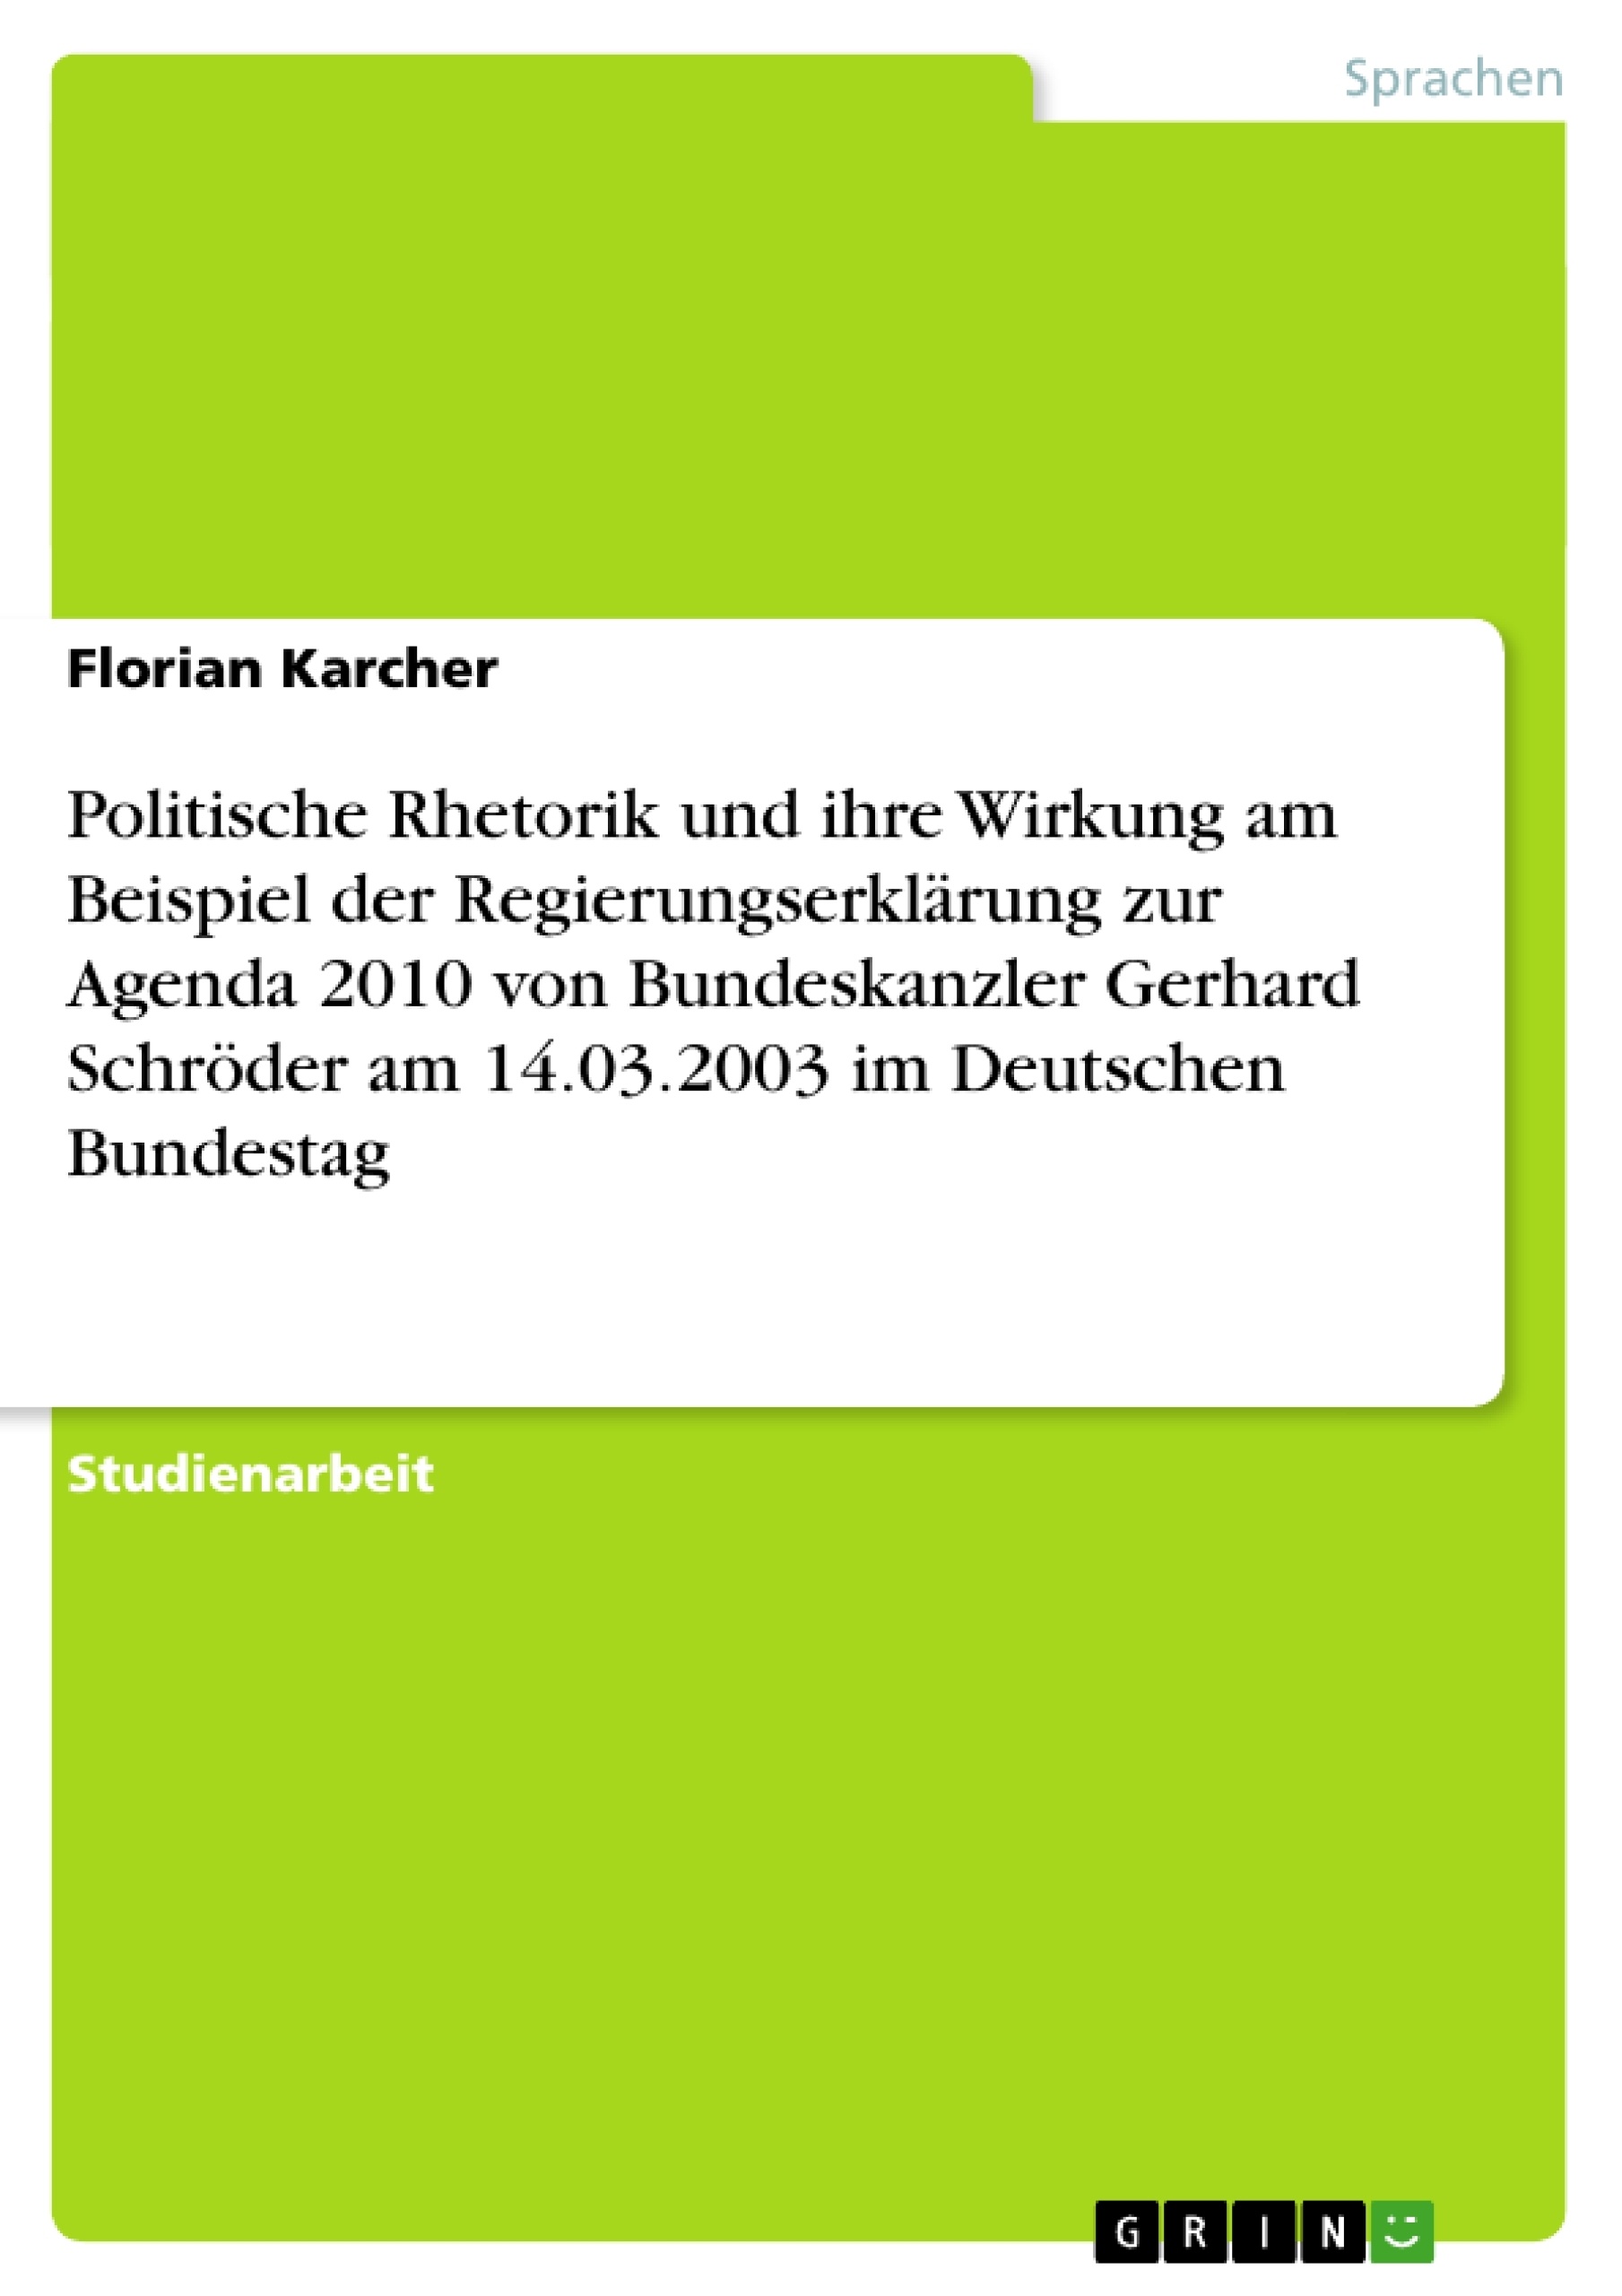 Titel: Politische Rhetorik und ihre Wirkung am Beispiel der Regierungserklärung zur Agenda 2010 von Bundeskanzler Gerhard Schröder am 14.03.2003 im Deutschen Bundestag